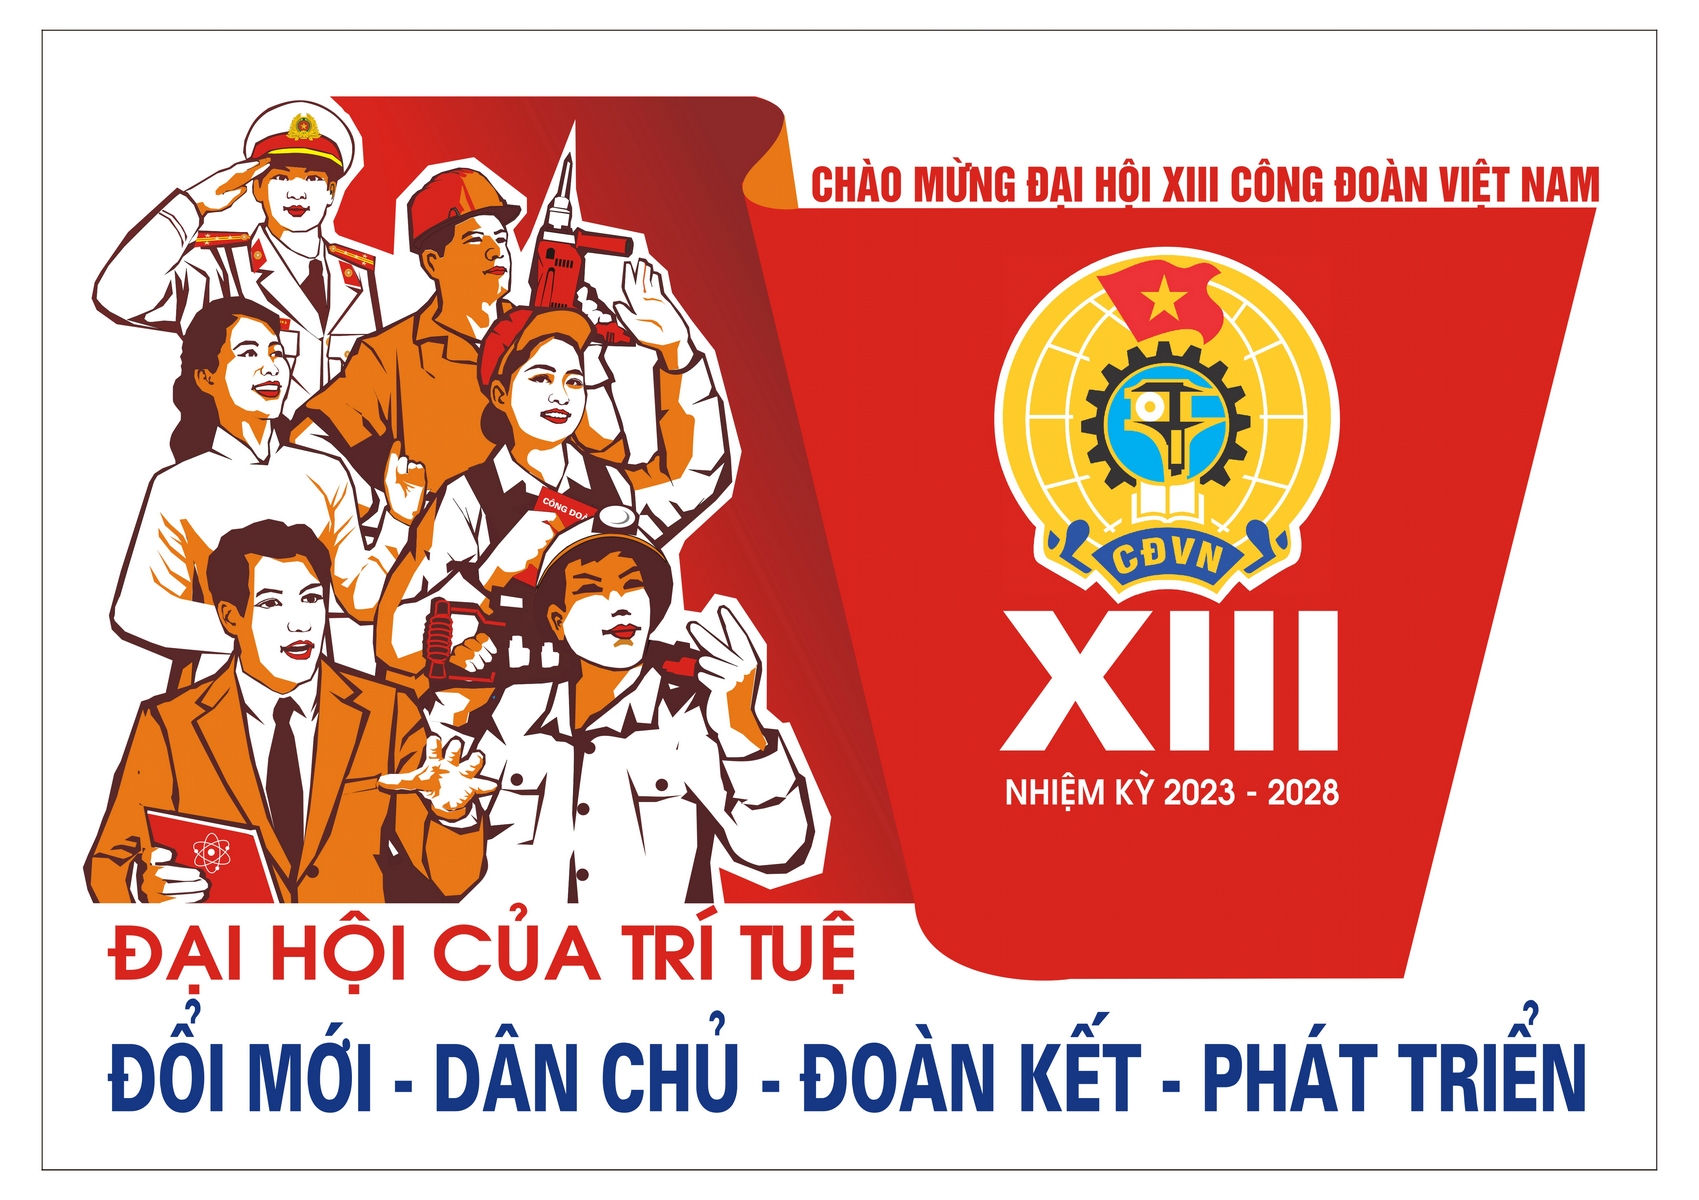 Tài liệu thông tin nhanh kết quả Đại hội XIII Công đoàn Việt Nam